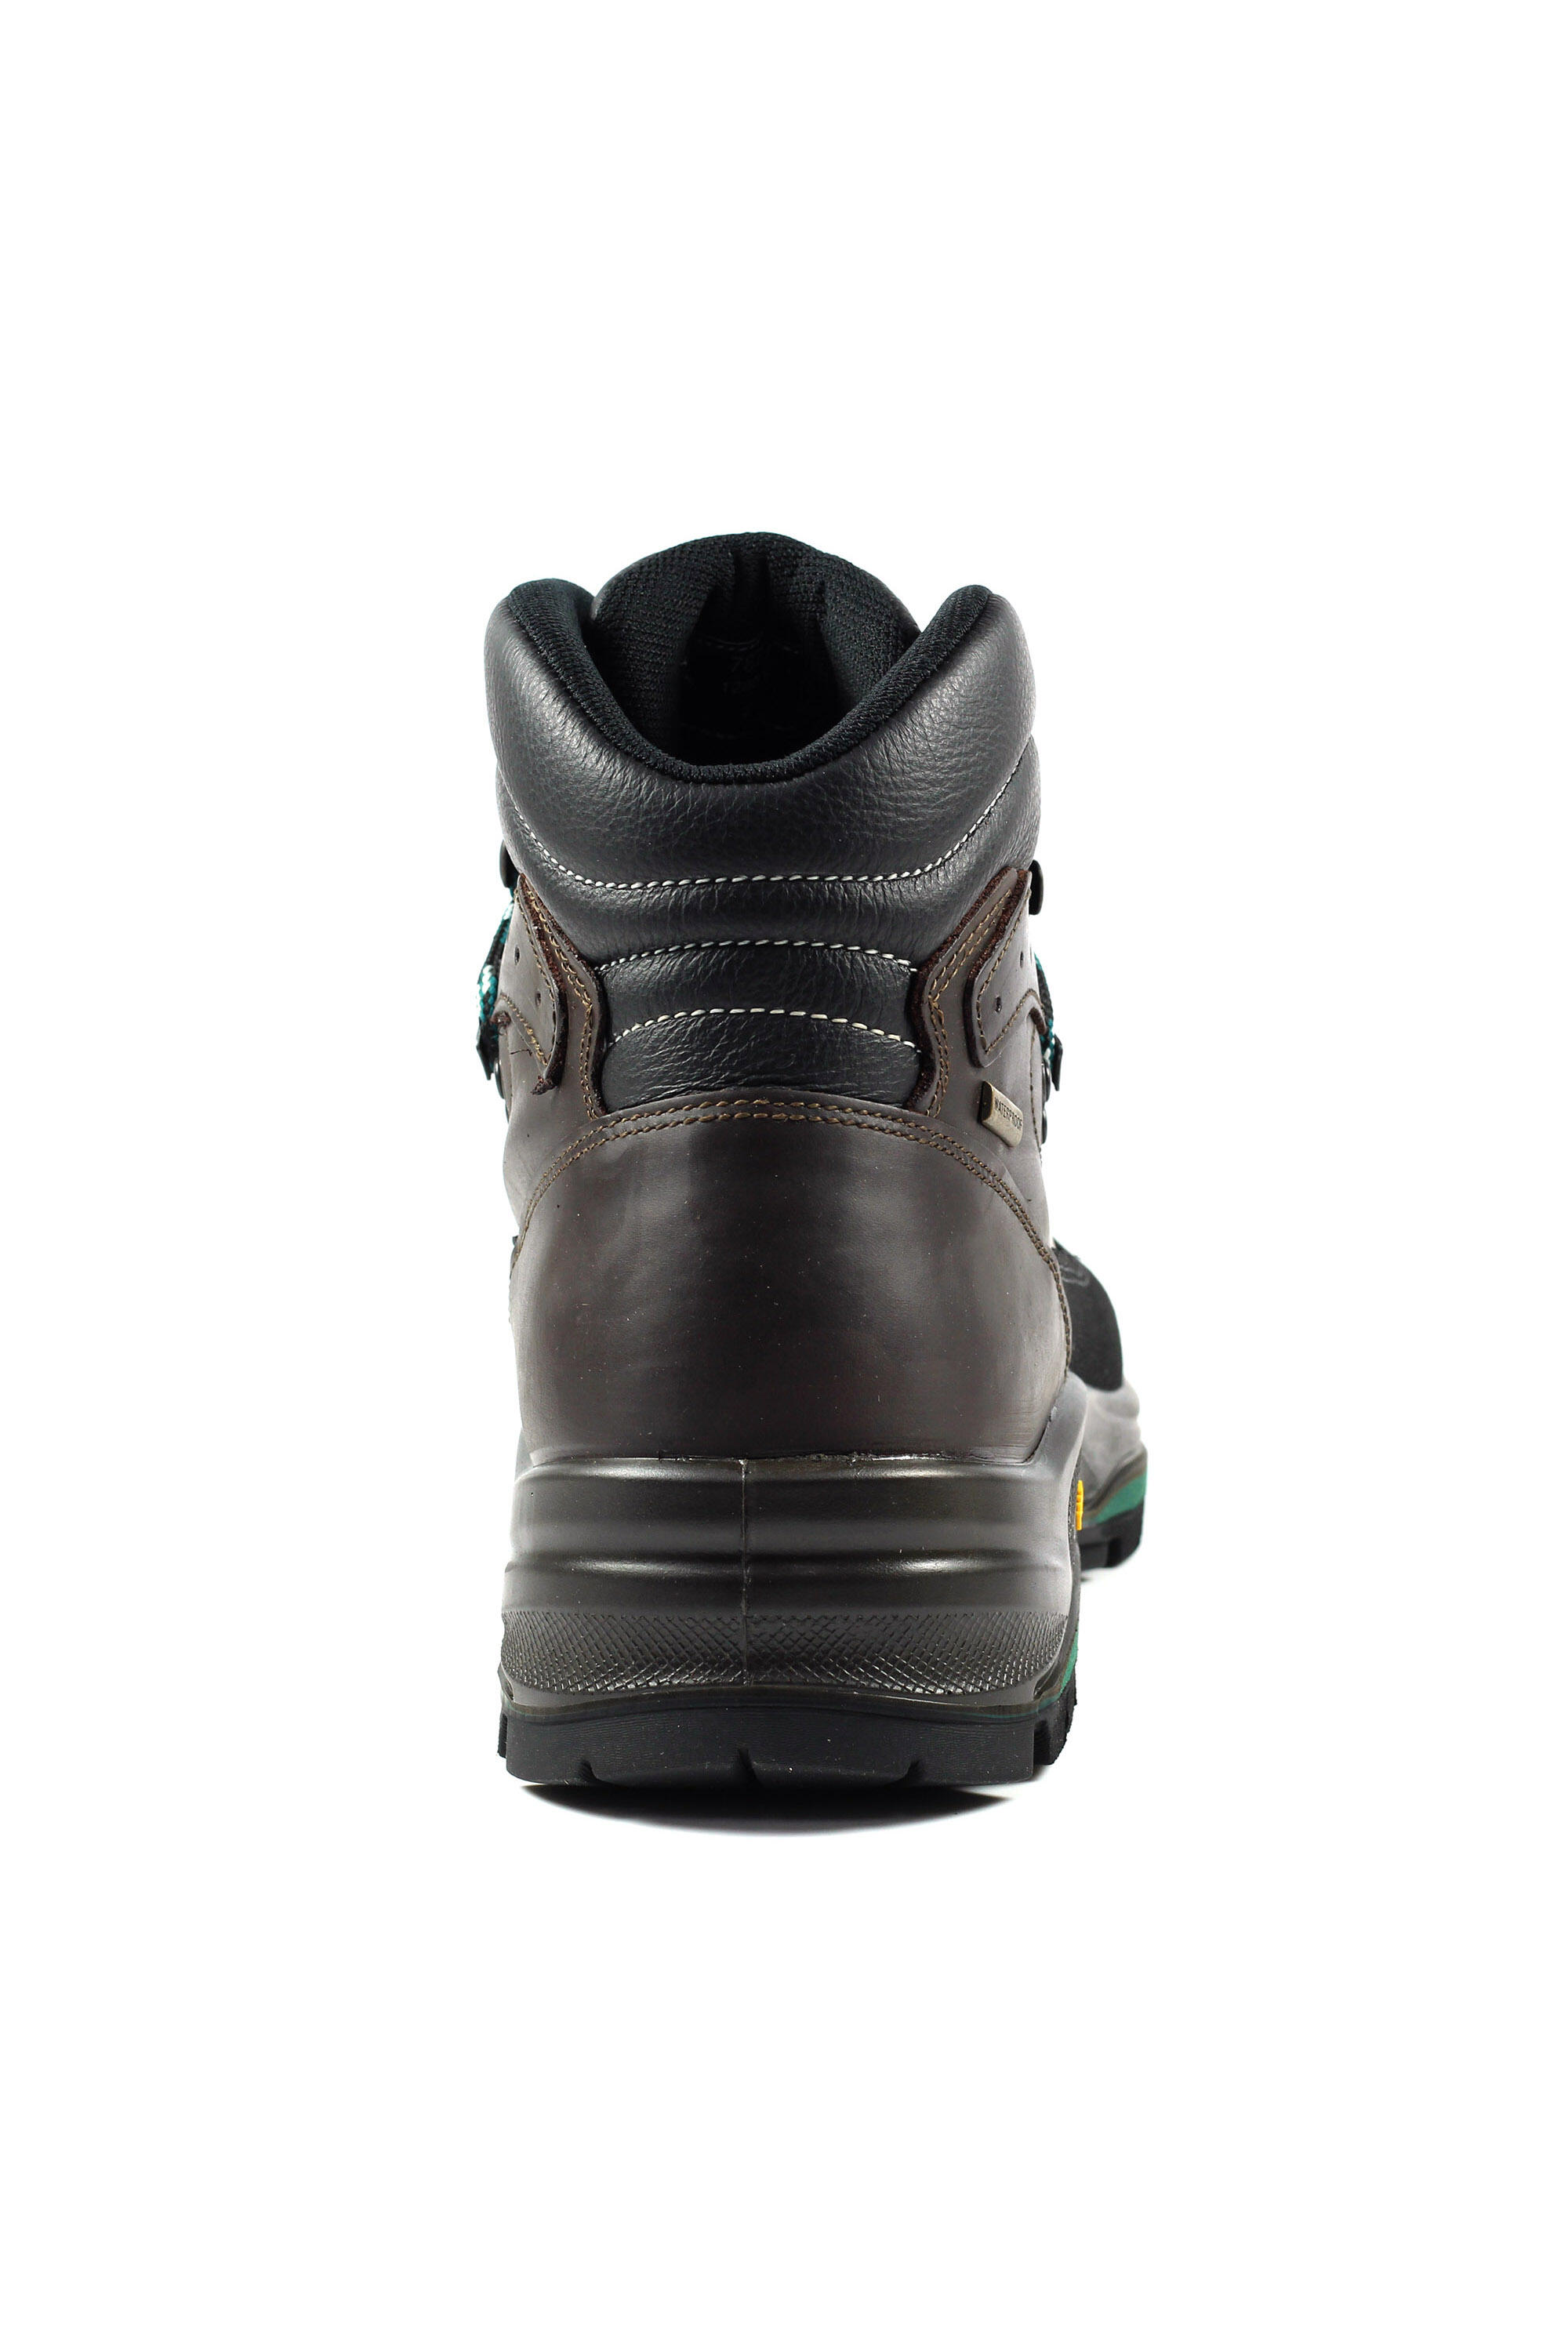 Inca Brown Waterproof Walking Boot 5/5